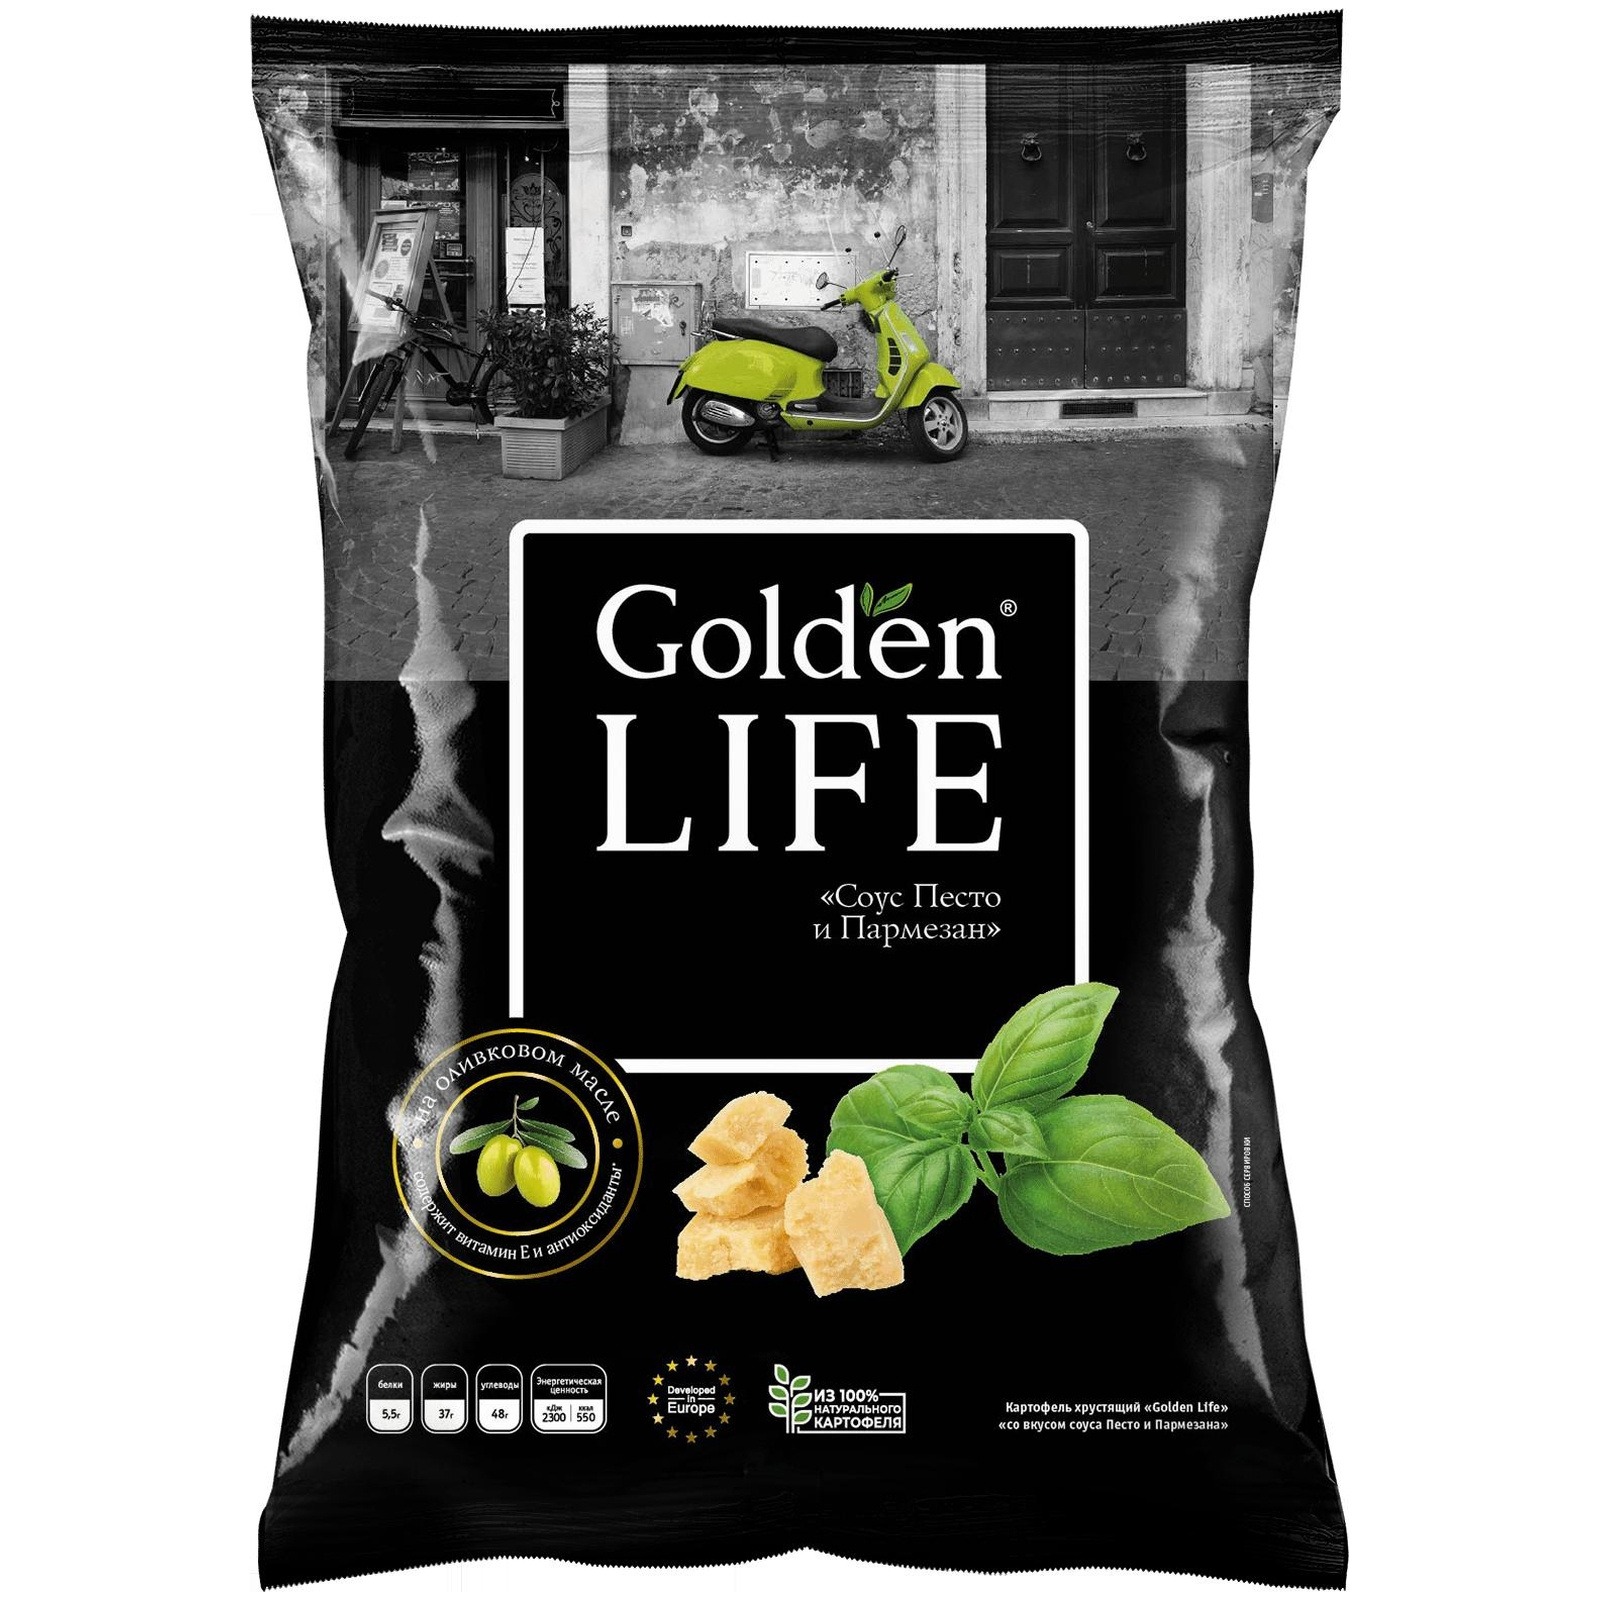 Чипсы Golden Life картофельные песто и пармезан, 90 г